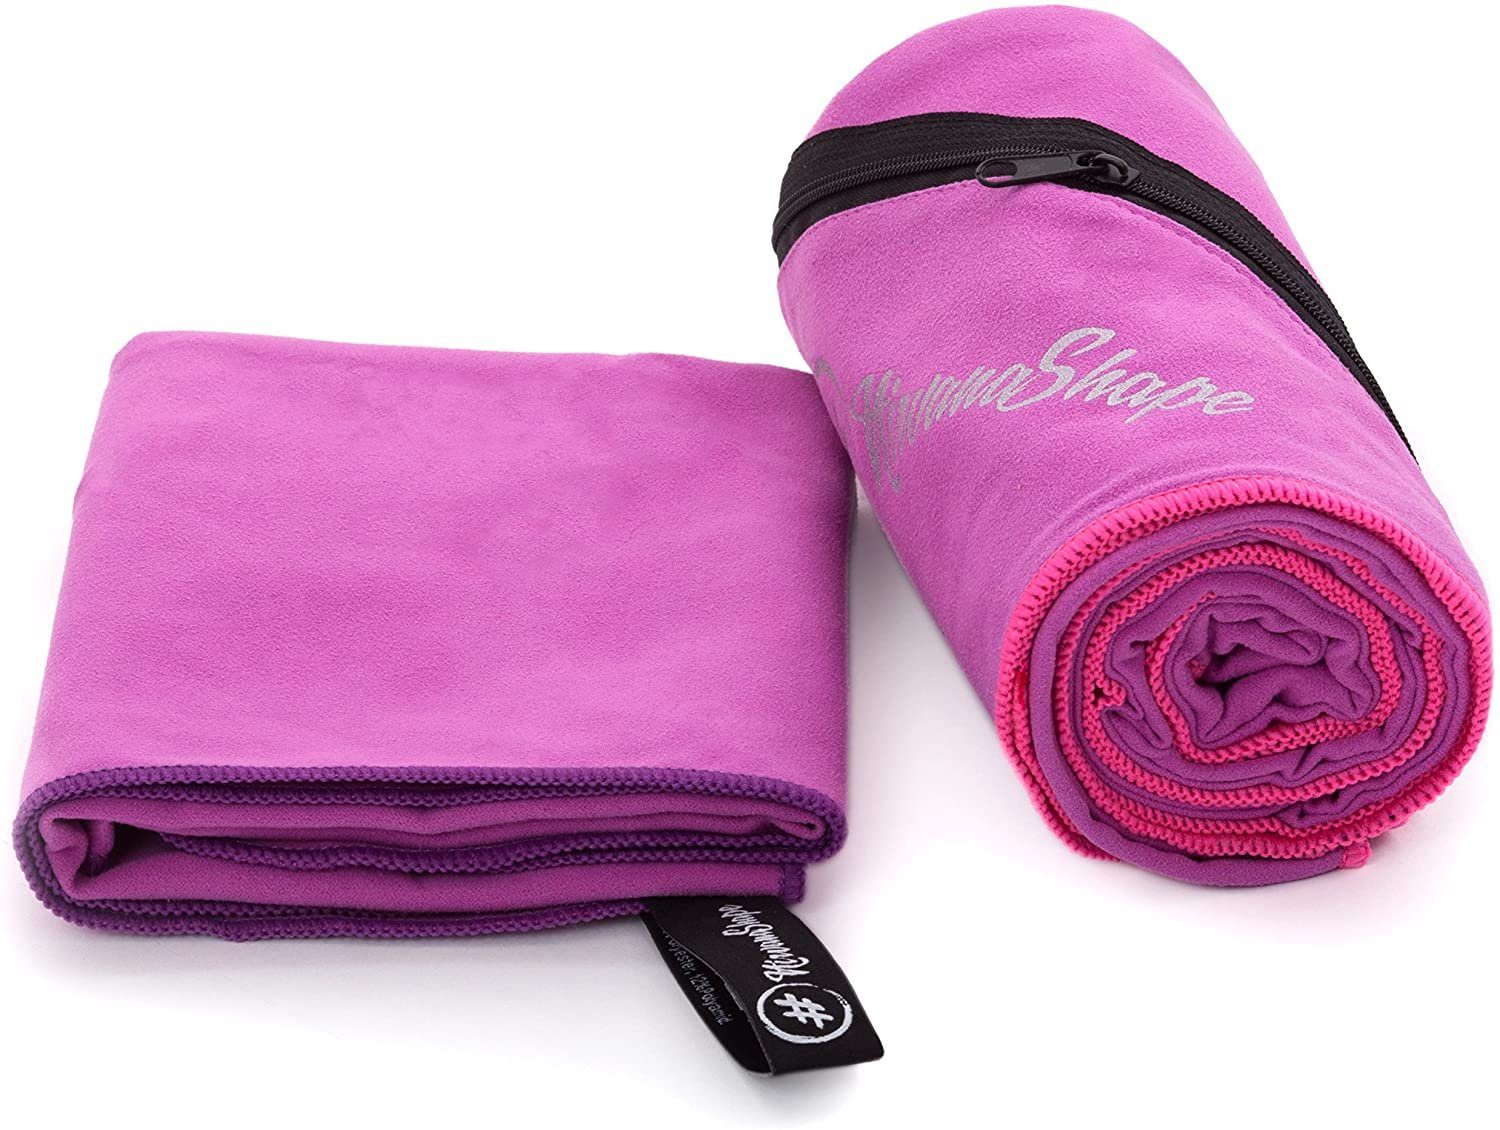 NirvanaShape Sporthandtuch Mikrofaser Handtuch, Badehandtuch, schnelltrocknend / Rand Pinker Ecktasche mit Sporthandtuch, saugfähig, Reißverschluss, Reisehandtuch, Pink leicht